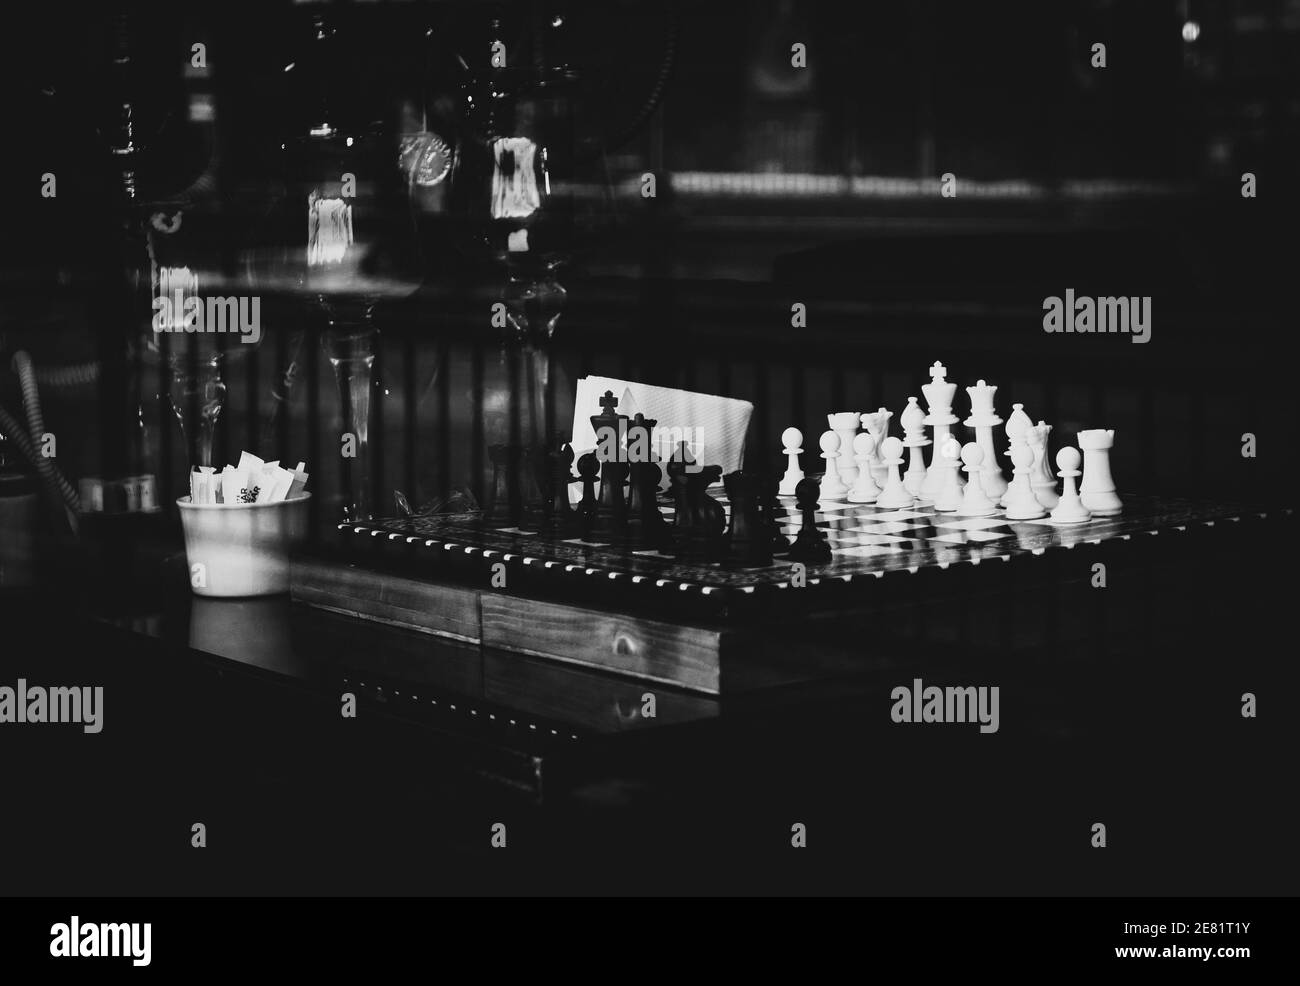 Jeu d'échecs noir et blanc placé dans la fenêtre d'un café turc, un jeu de société que les clients aiment jouer tout en buvant du café. Banque D'Images